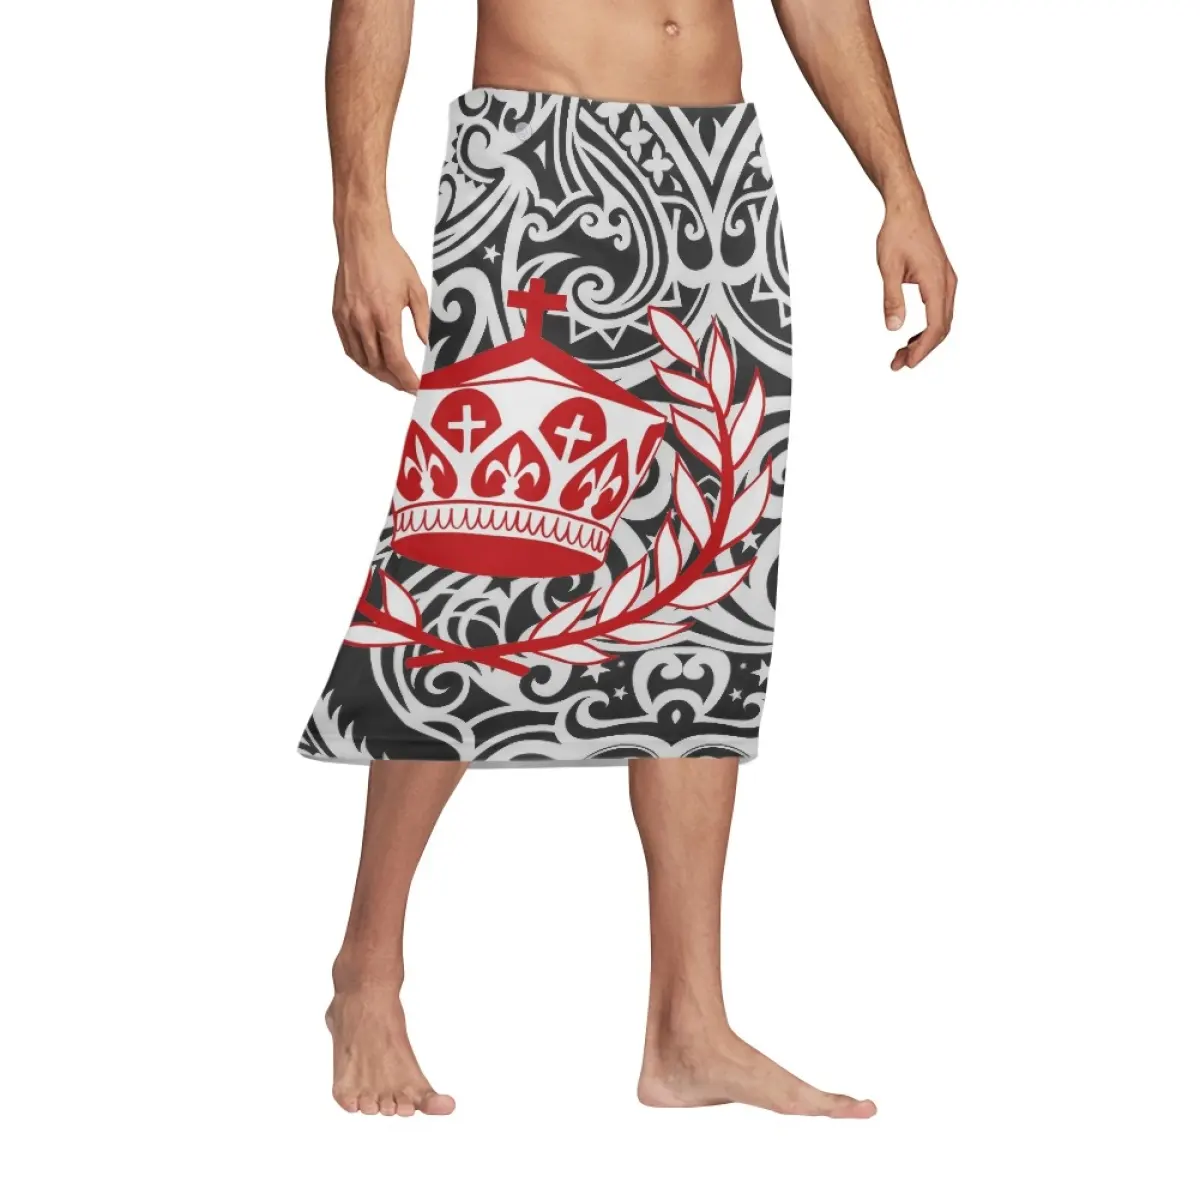 Benutzer definierte Tribal Print On Demand Sarong Männer Indonesien Lungi Röcke Bali Sarong Pareo Tonga Traditionelle Herren Asien Ethnische Kleidung